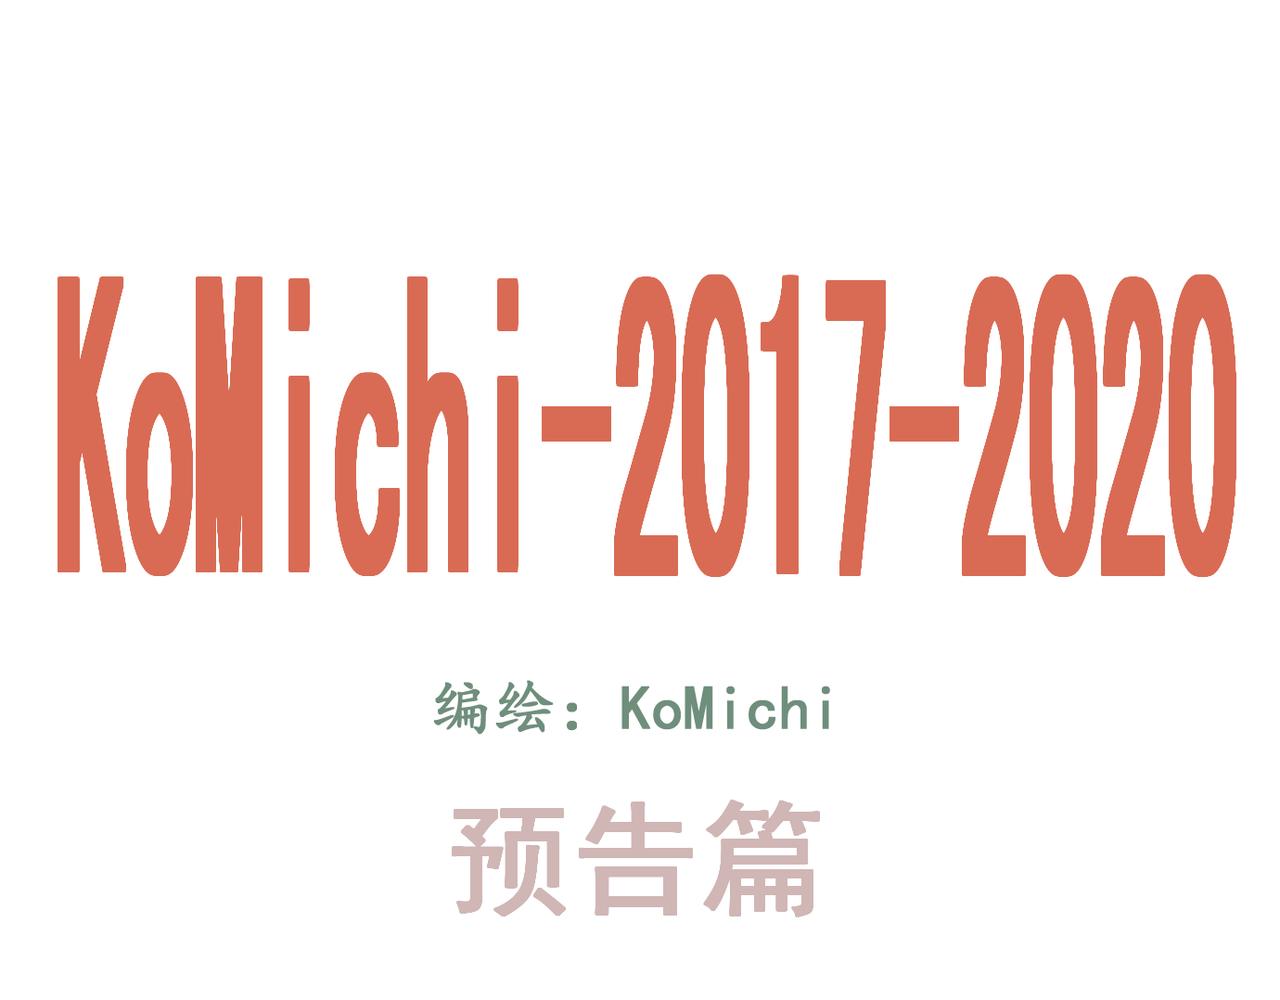 KoMichi-2017-2020 - 預告篇（疫情日常） - 4